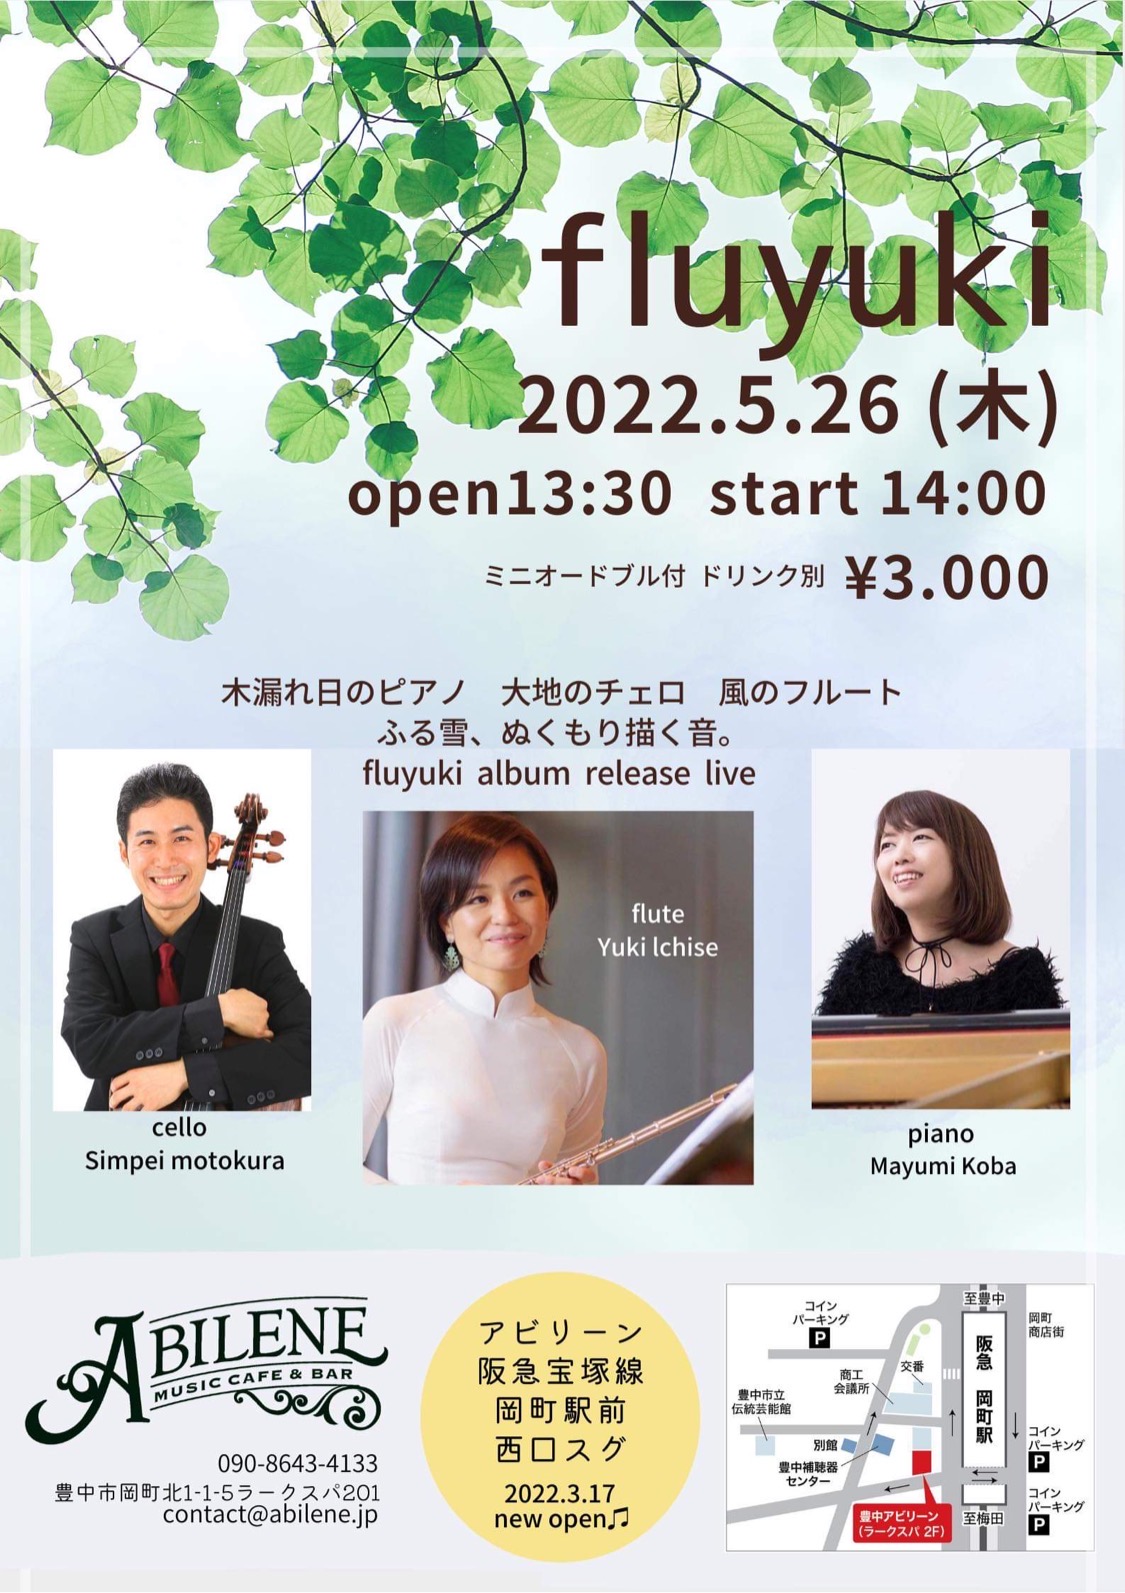 fuluyuki (ピアノ・チェロ・フルート)